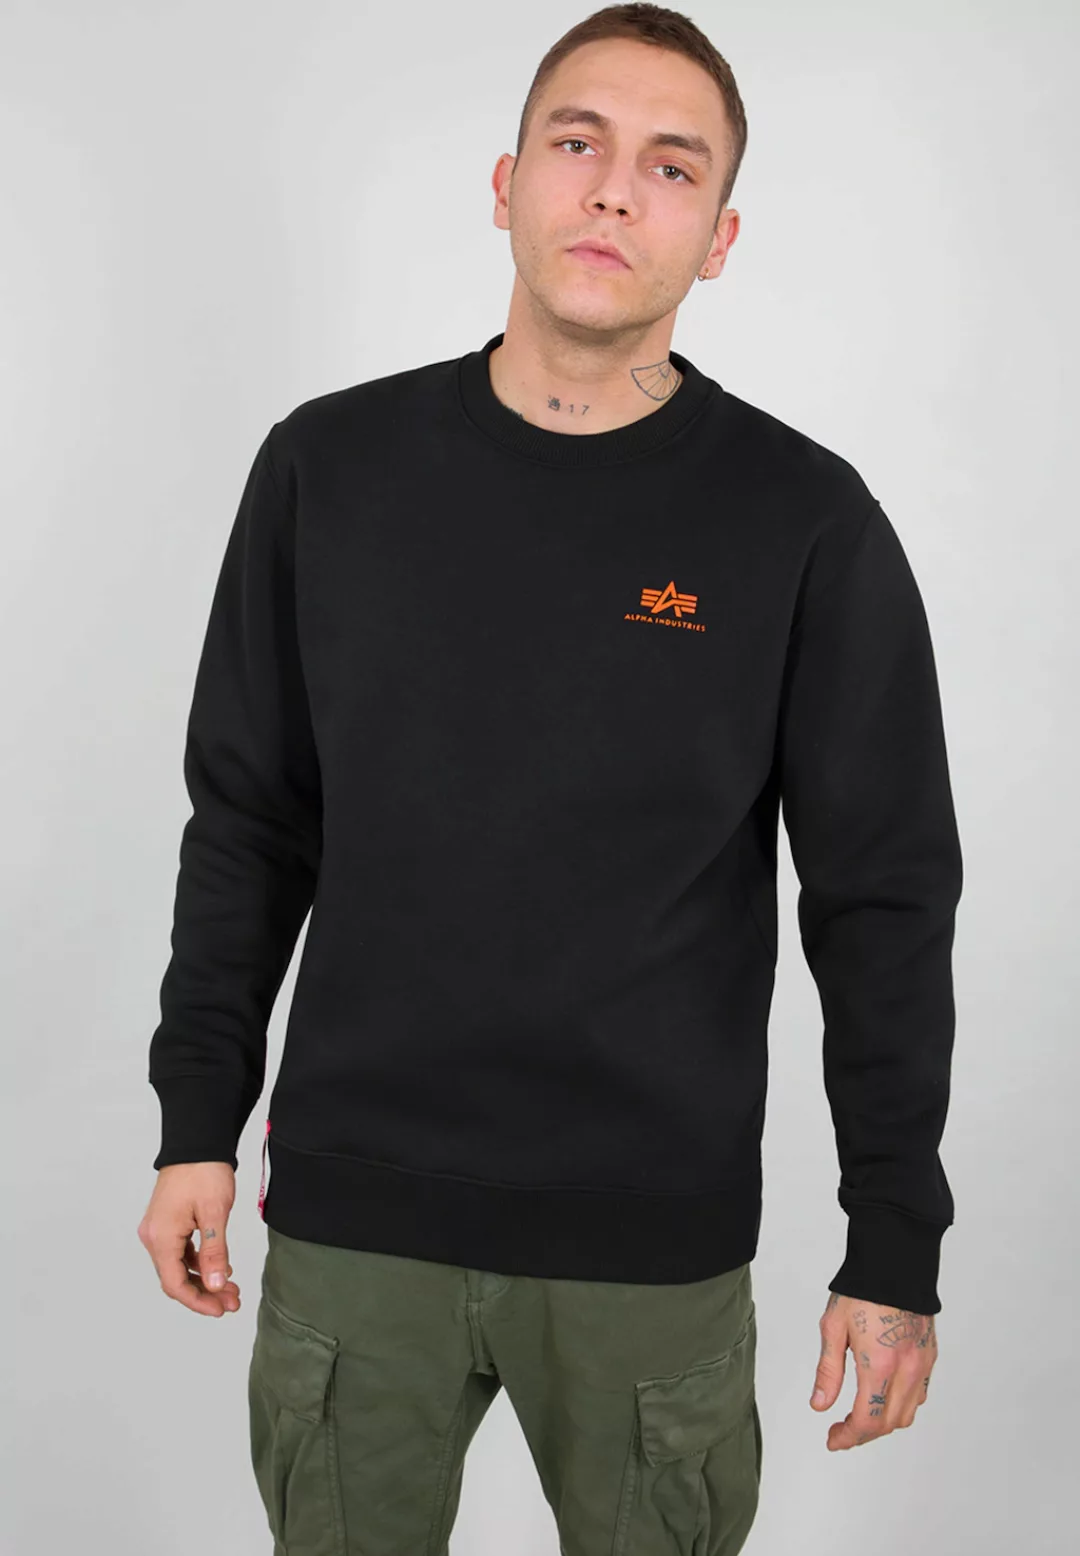 Alpha Industries Sweater "ALPHA INDUSTRIES Men - Sweatshirts" günstig online kaufen